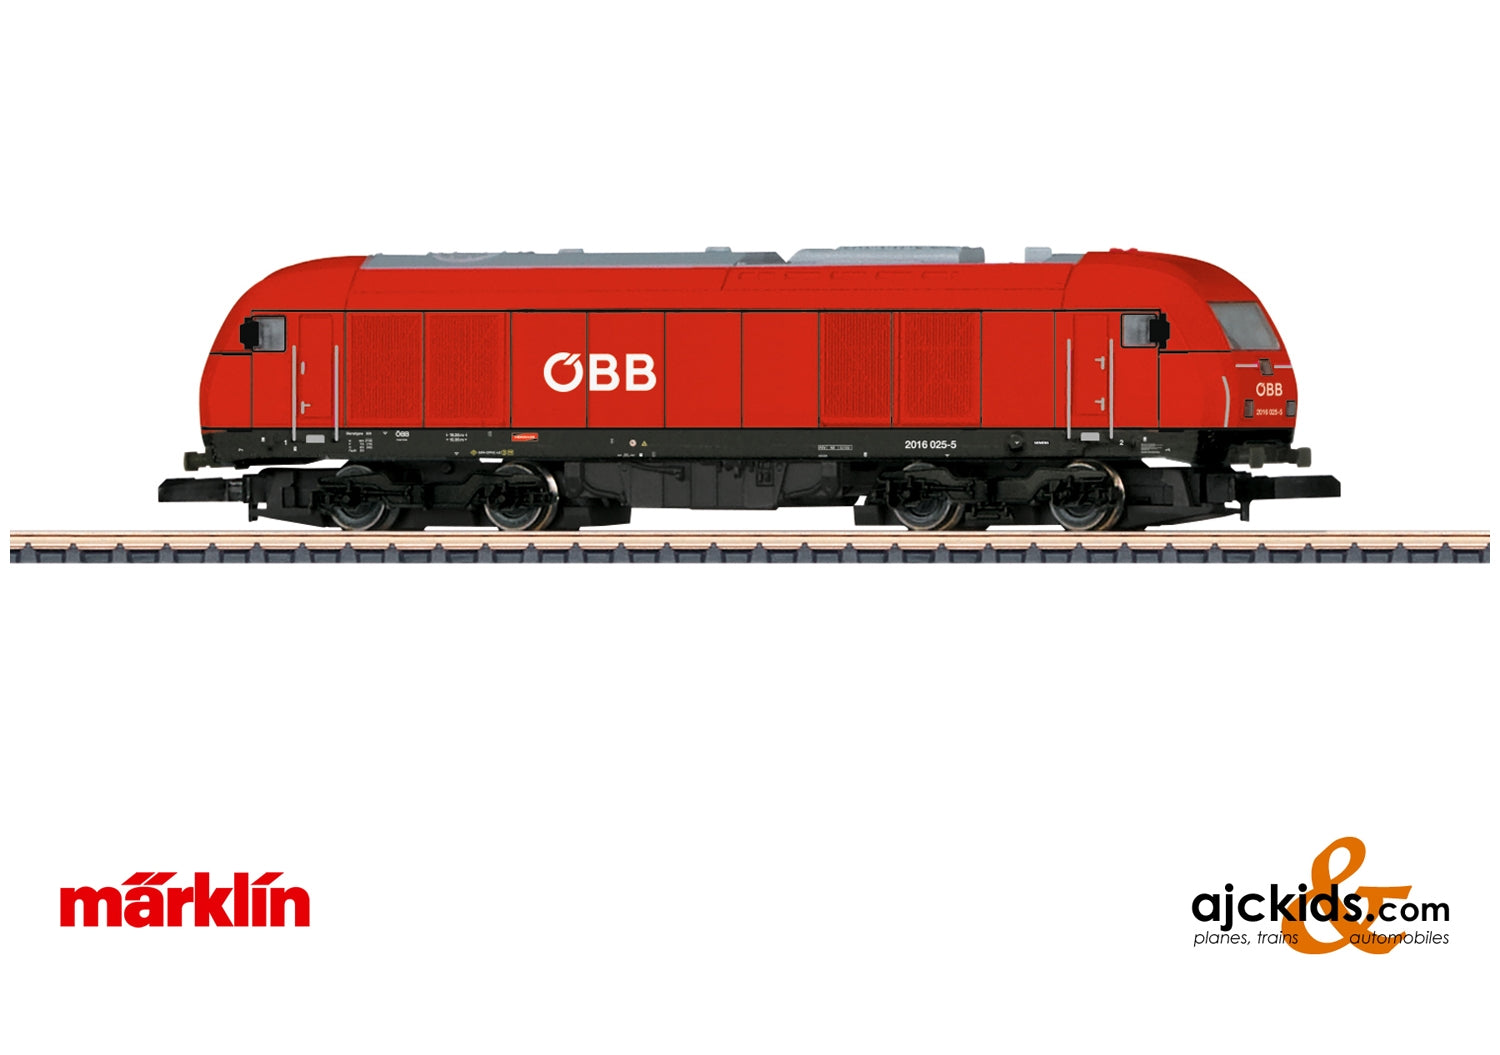 Marklin 88880 - Class 2016 Diesel Locomotive